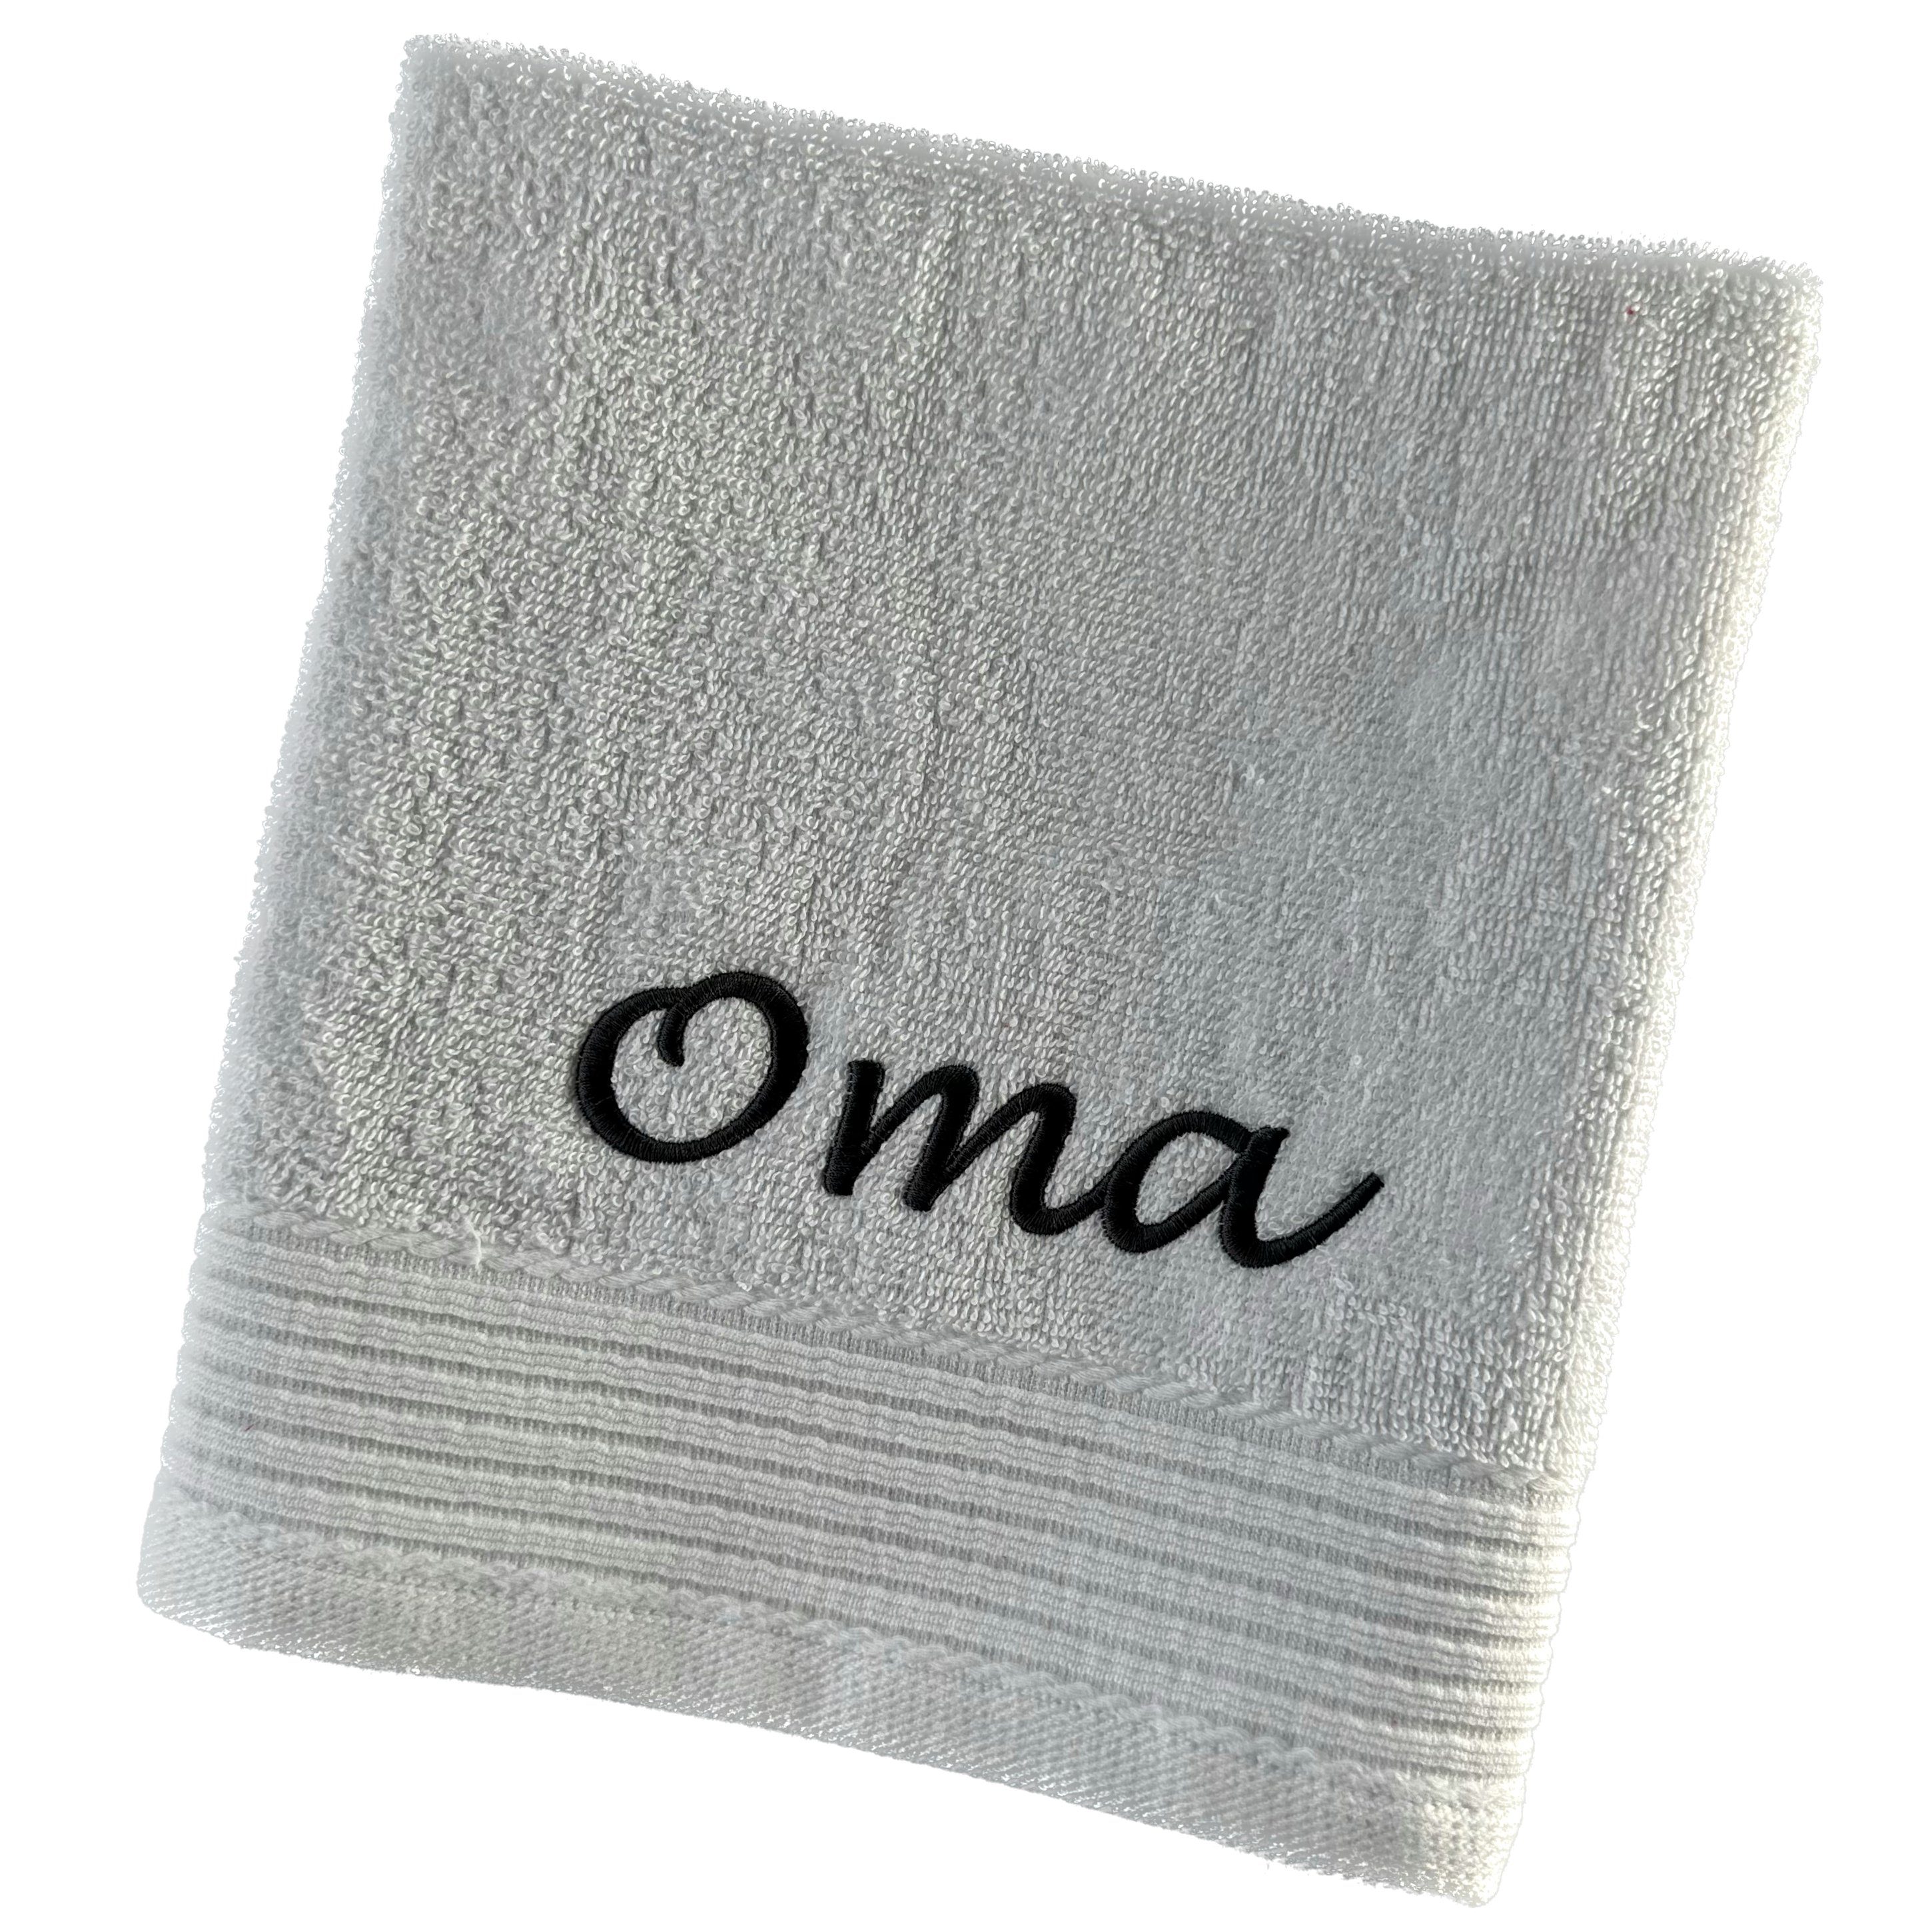 Schnoschi Handtuch Handtuch mit Oma oder Opa bestickt Gästehandtuch Duschtuch Badetuch, hochwertige Bestickung mit Oma oder Opa flieder